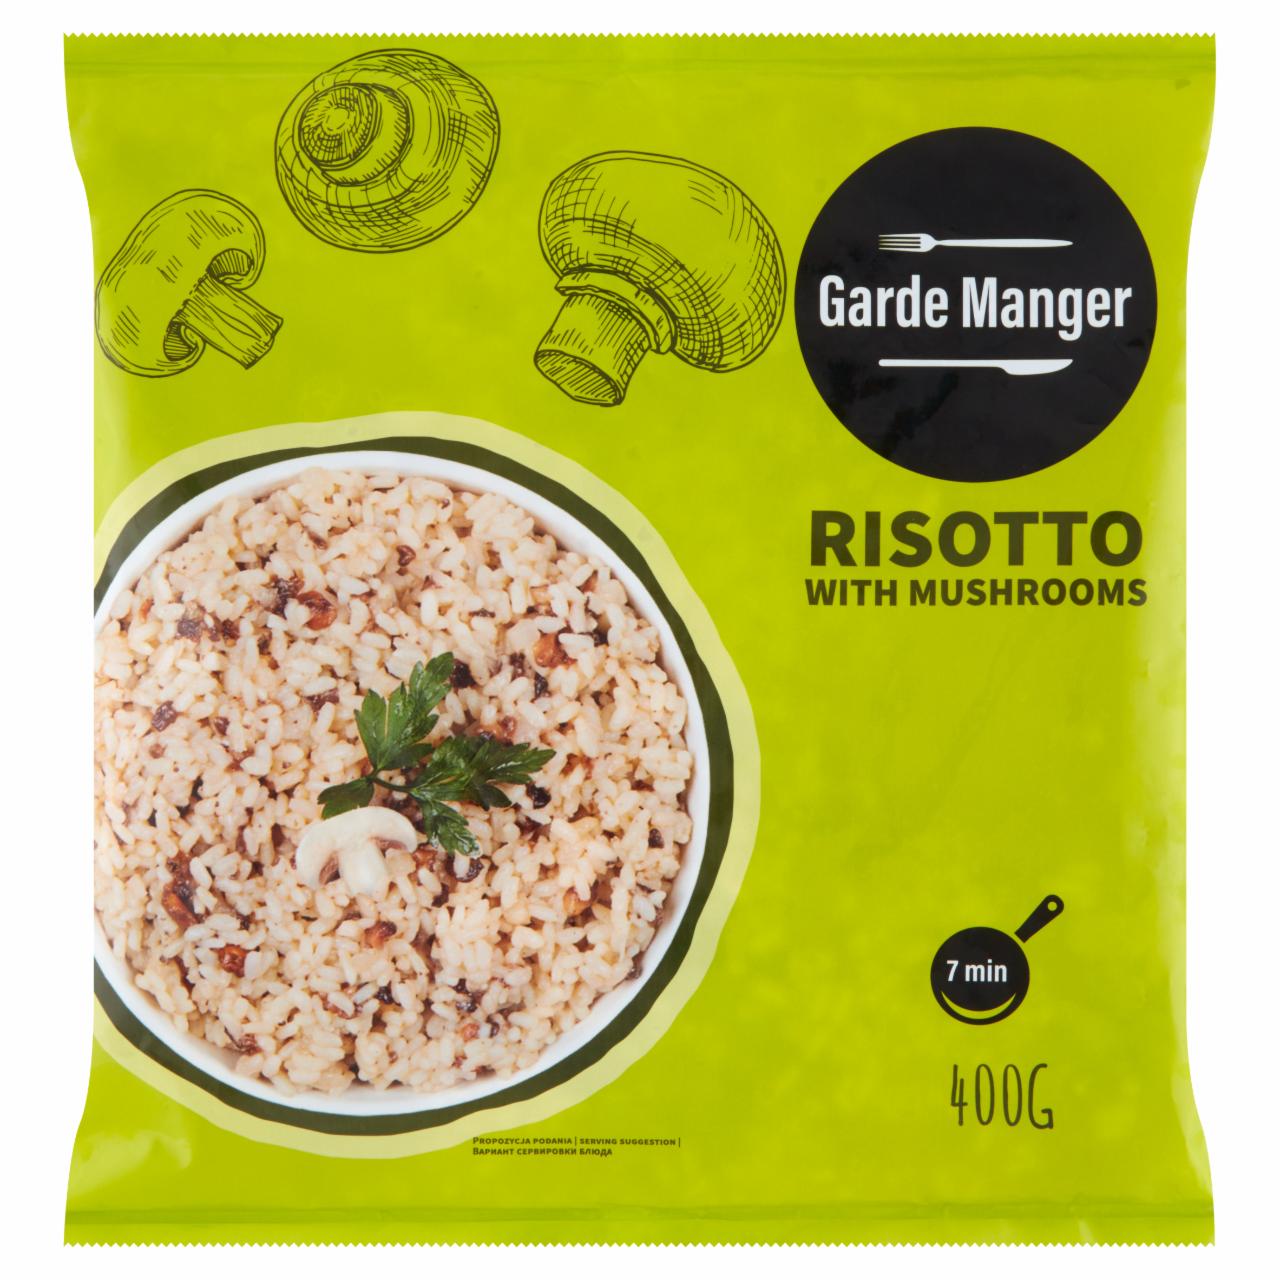 Zdjęcia - Garde Manger Risotto z grzybami 400 g